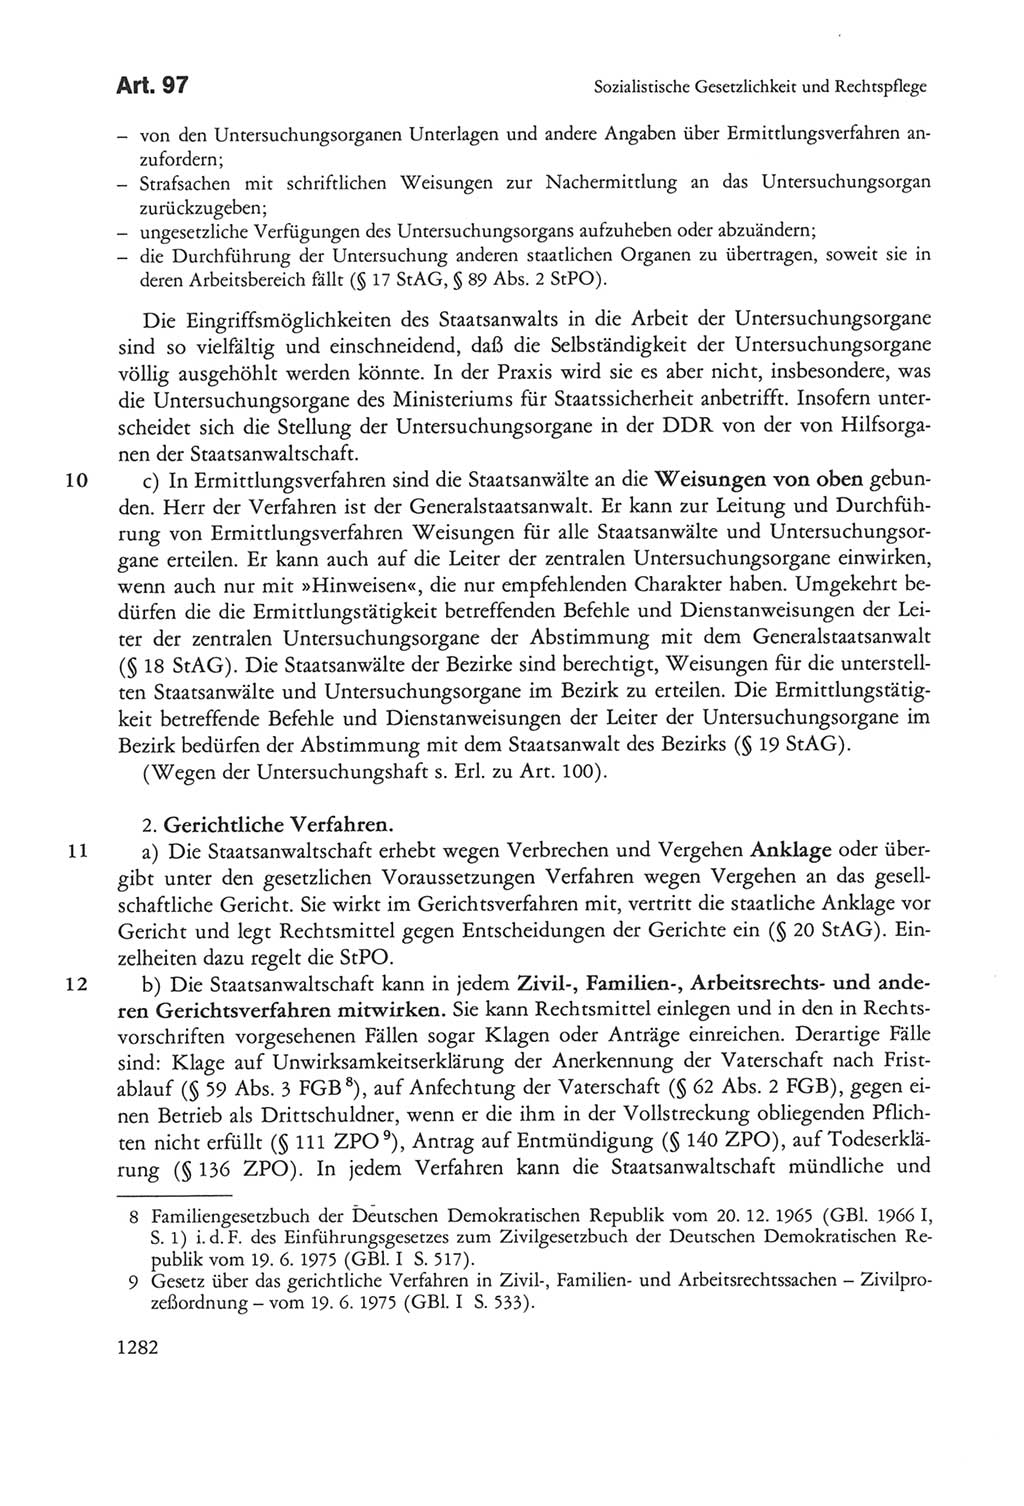 Die sozialistische Verfassung der Deutschen Demokratischen Republik (DDR), Kommentar 1982, Seite 1282 (Soz. Verf. DDR Komm. 1982, S. 1282)